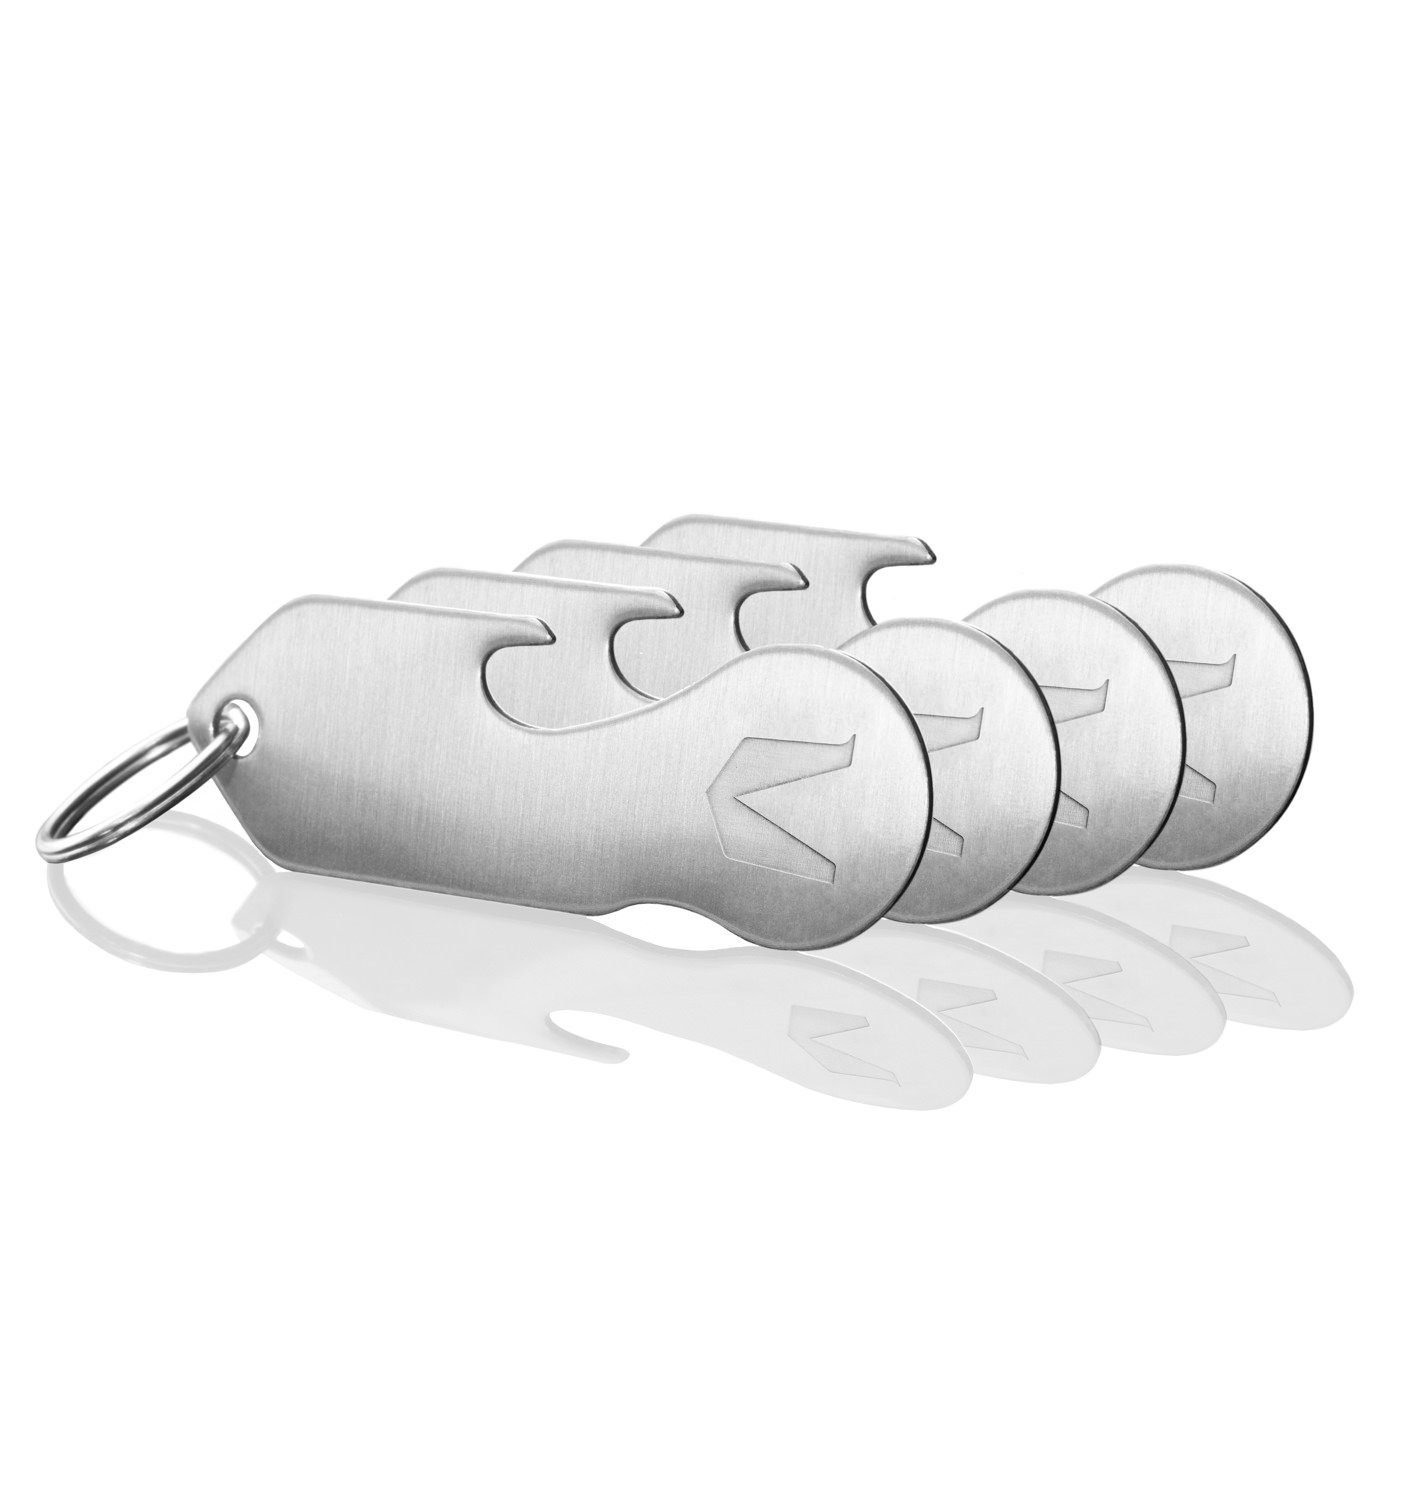 Schlüsselfinder, Schlüsselanhänger Schlüsselanhänger Flaschenöffner, MAGATI (4-tlg), Multitool Einkaufswagenlöser,